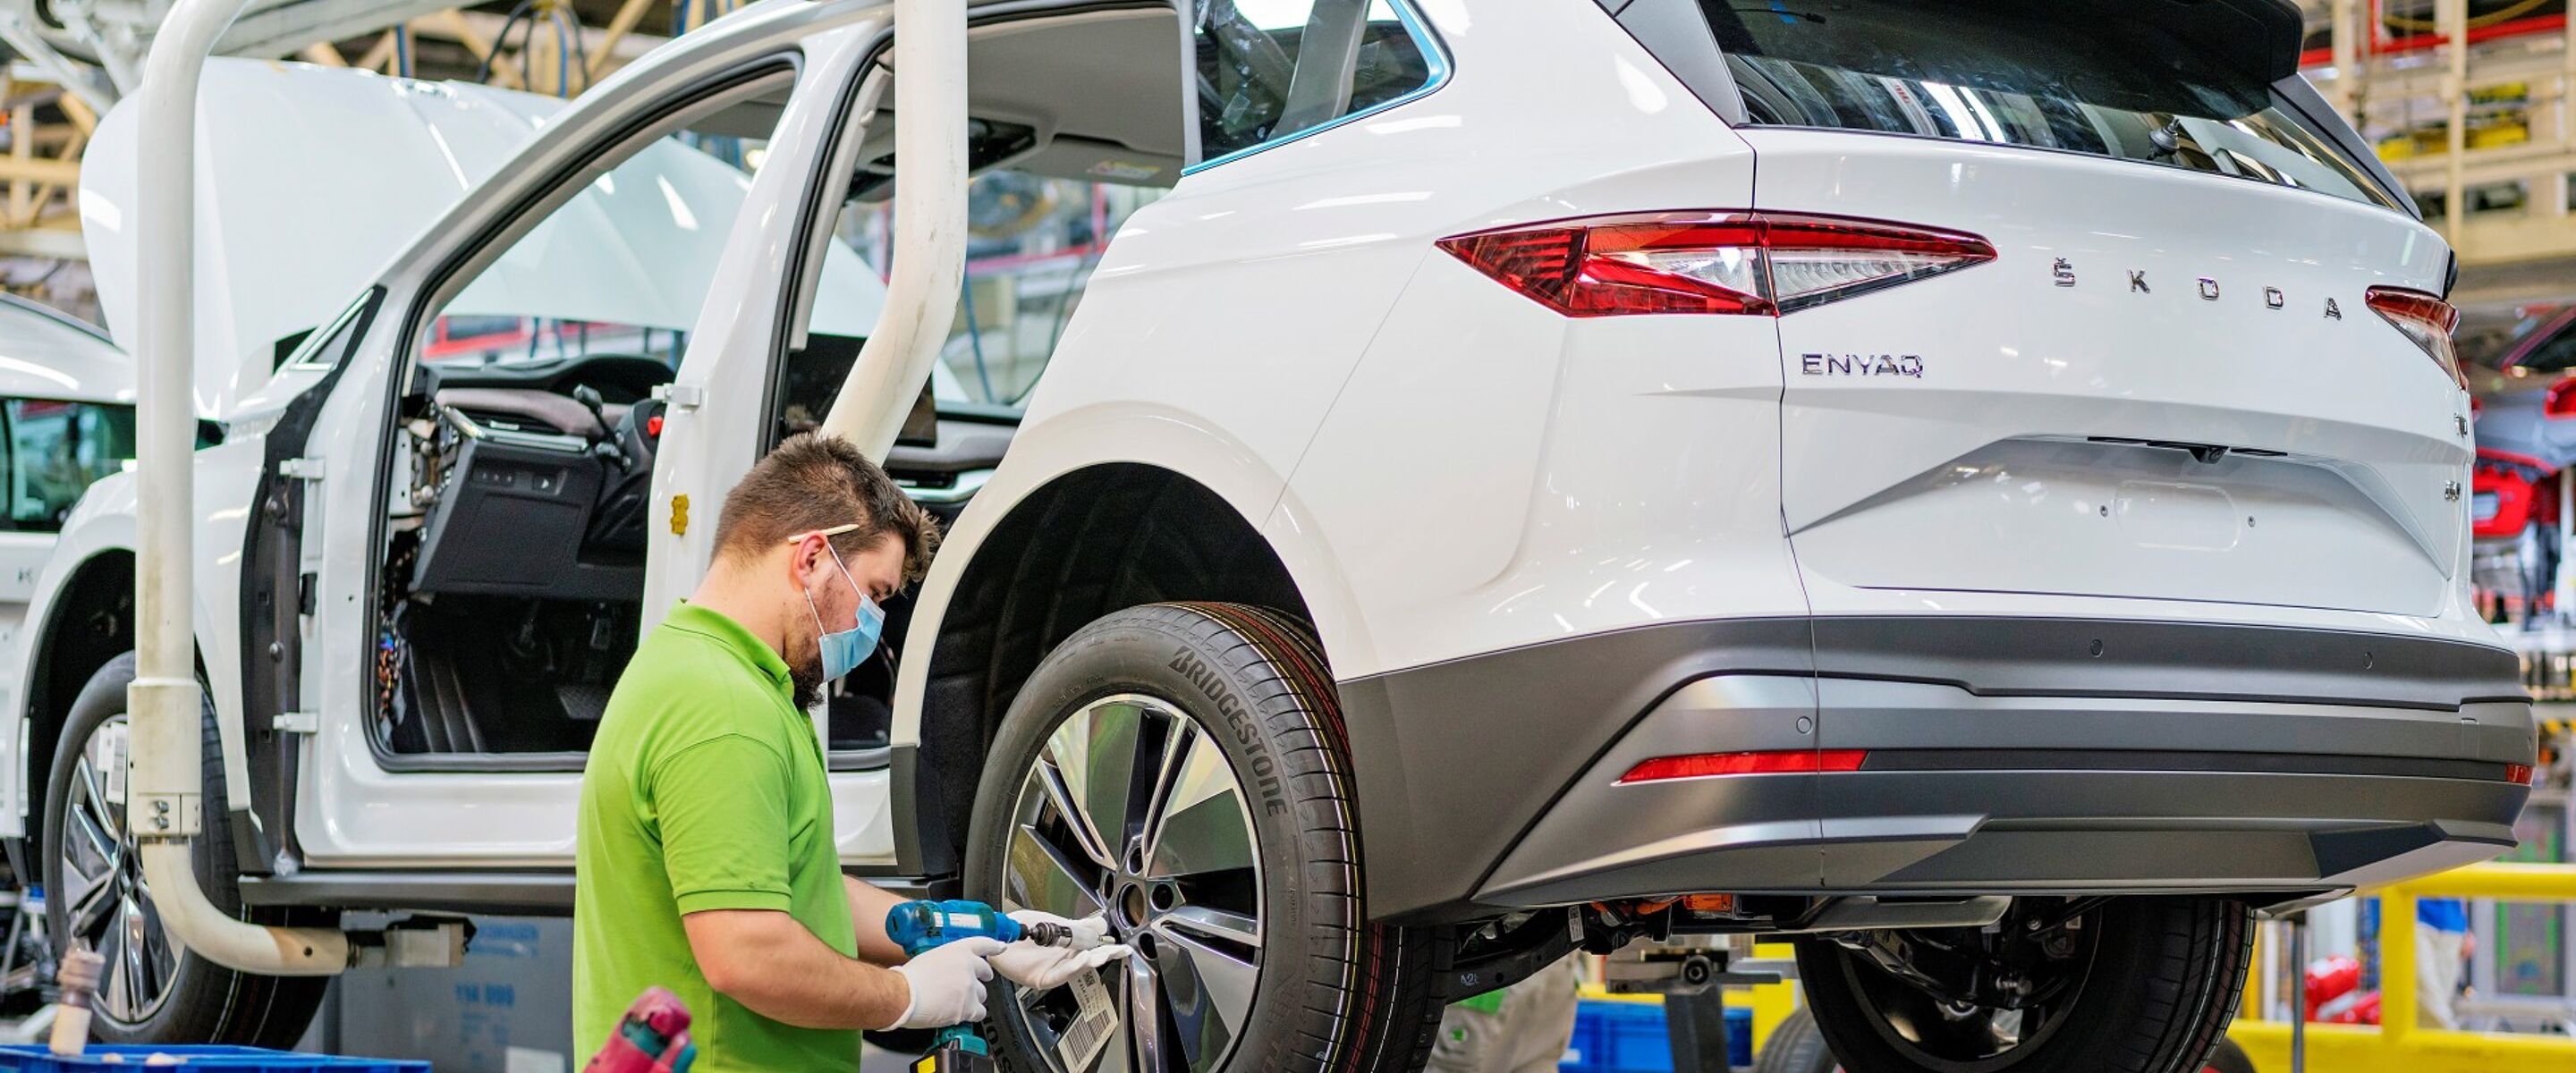 Škoda-fabrieken openen deuren weer voor publiek